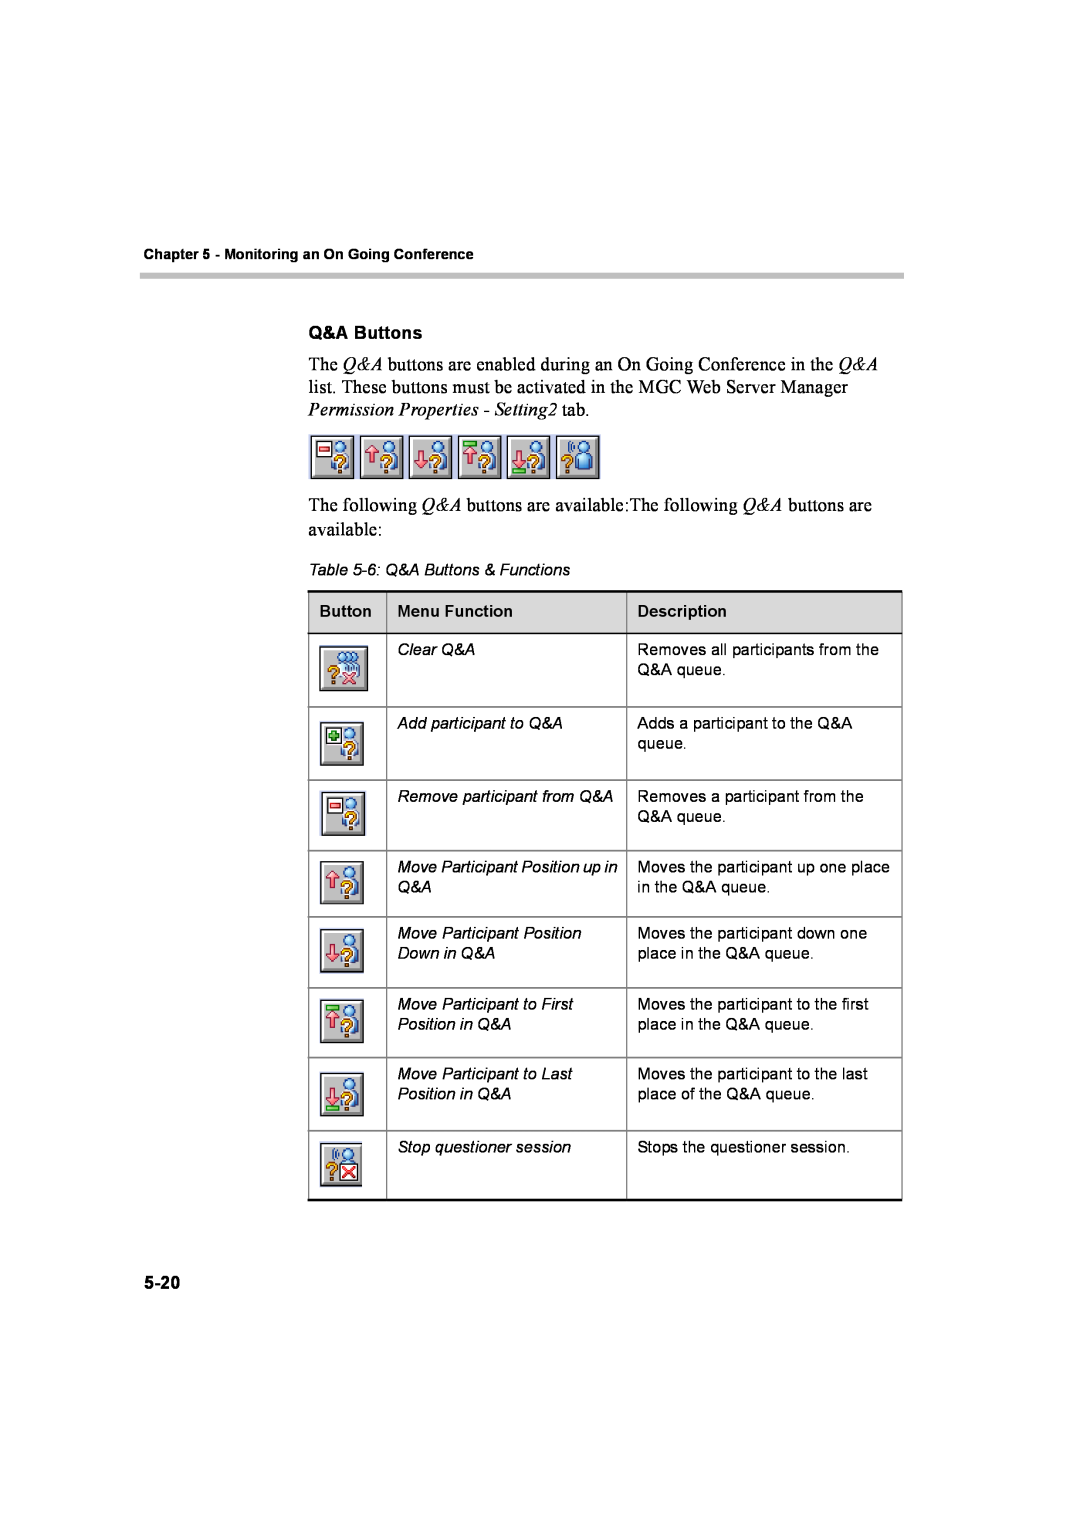 Polycom 8 manual Q&A Buttons, 5-20, Menu Function, Description 